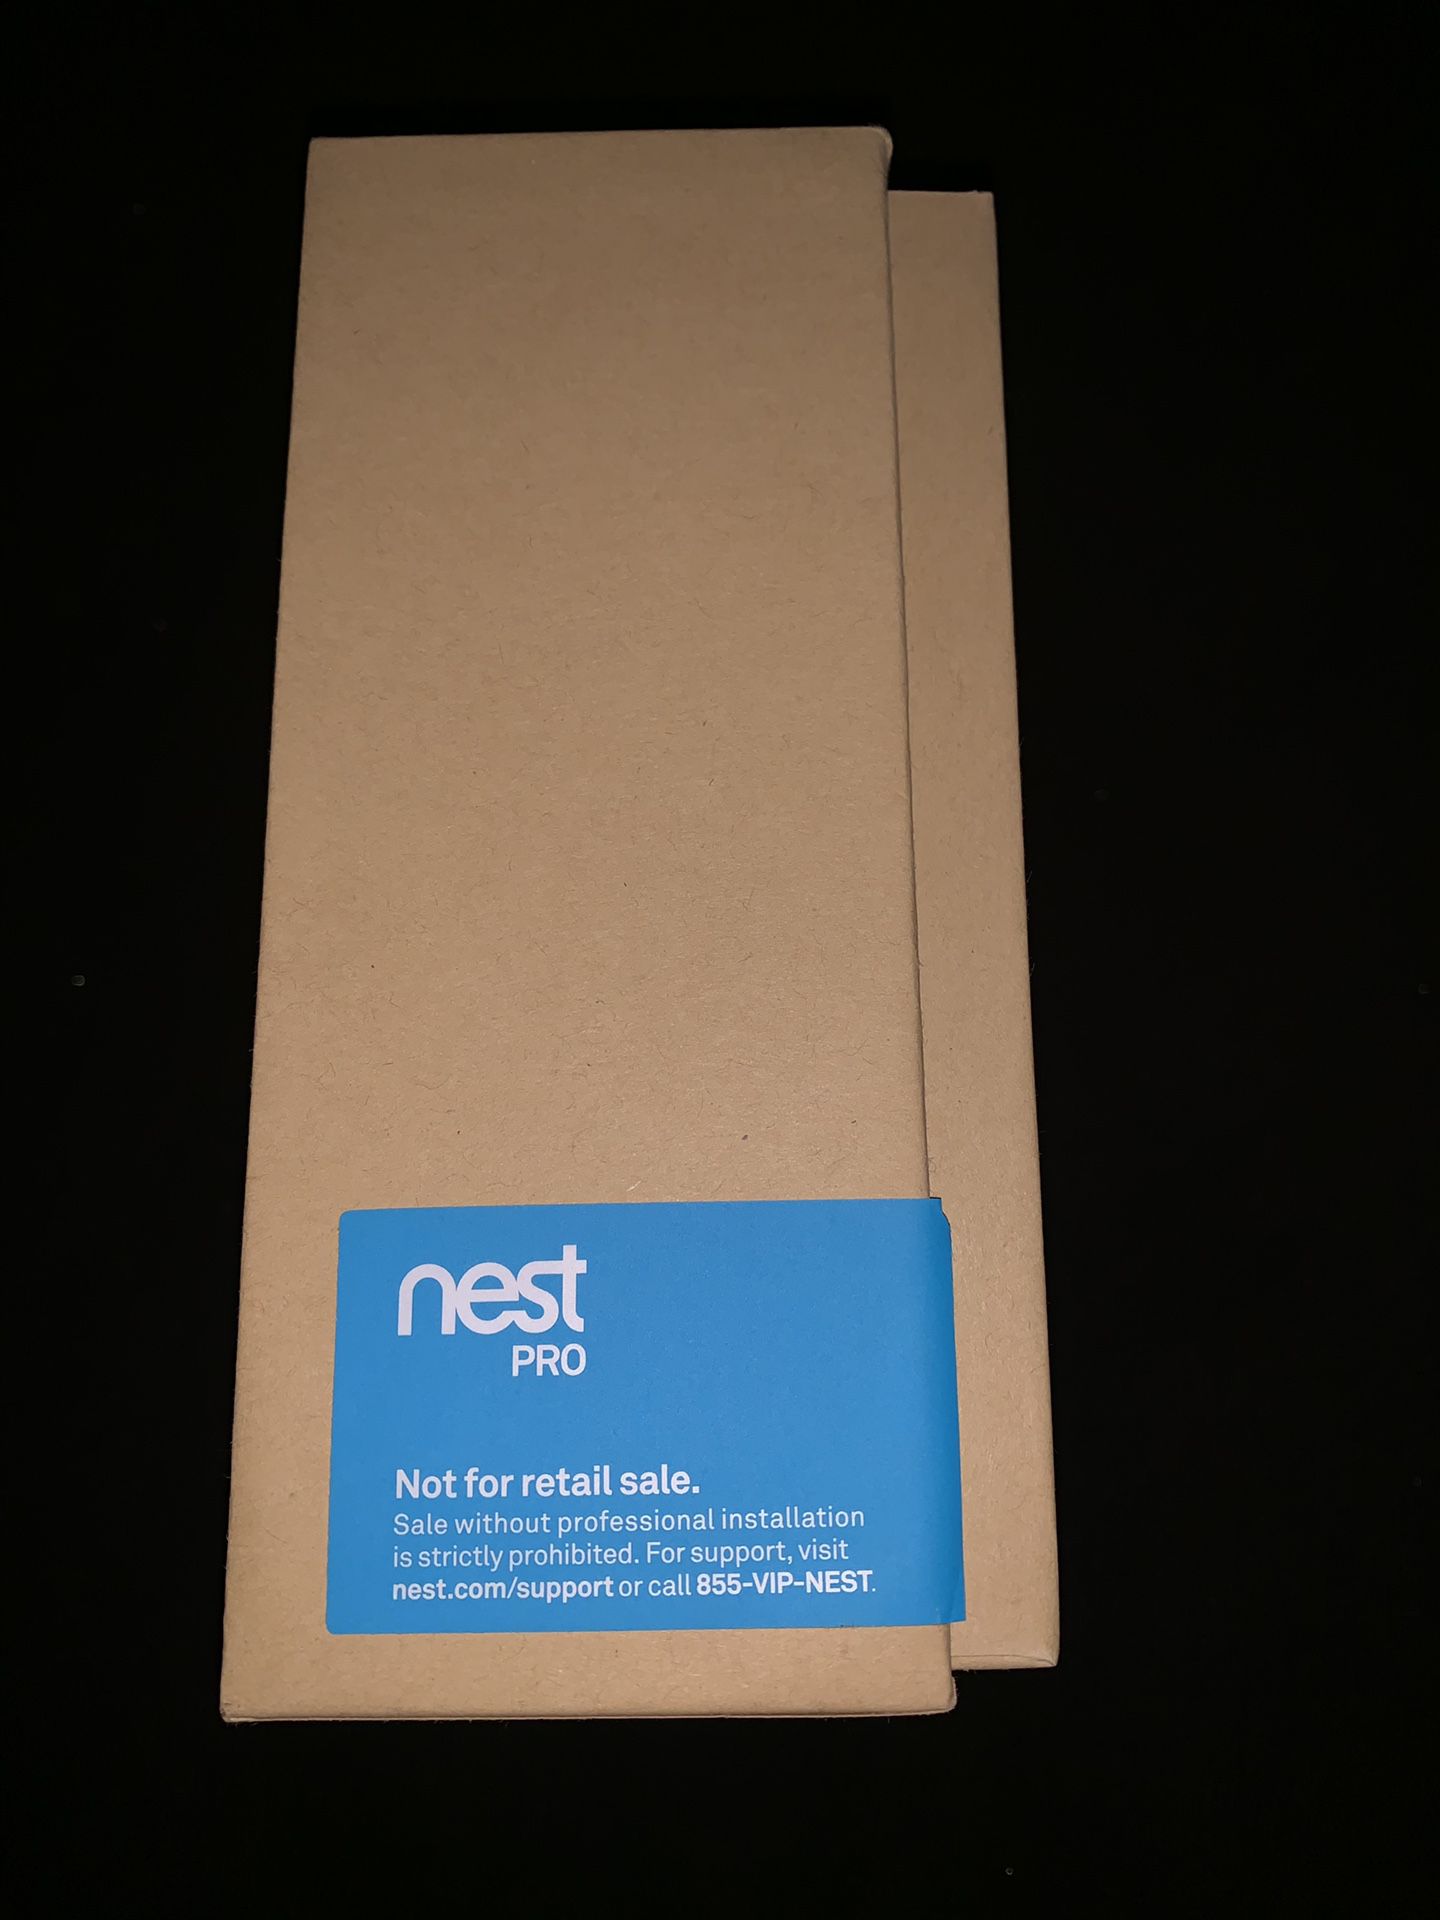 Nest Pro Thermostat